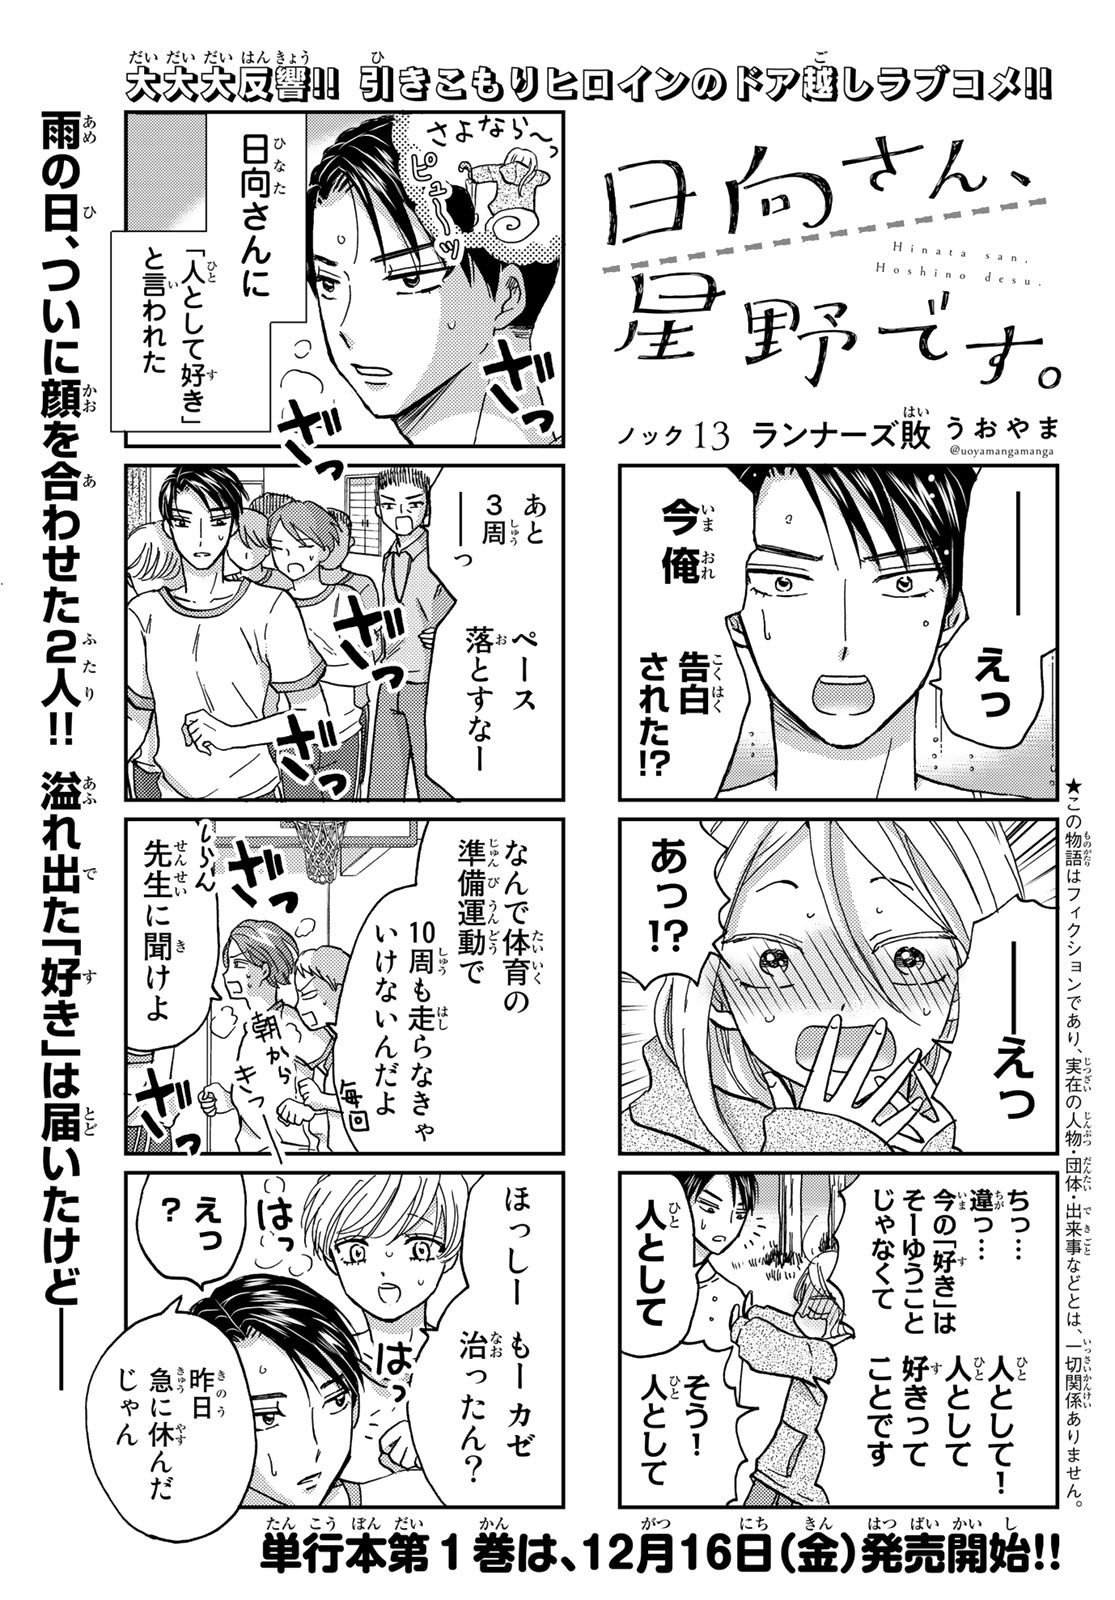 Hinata-san, Hoshino desu. - Chapter 013 - Page 1